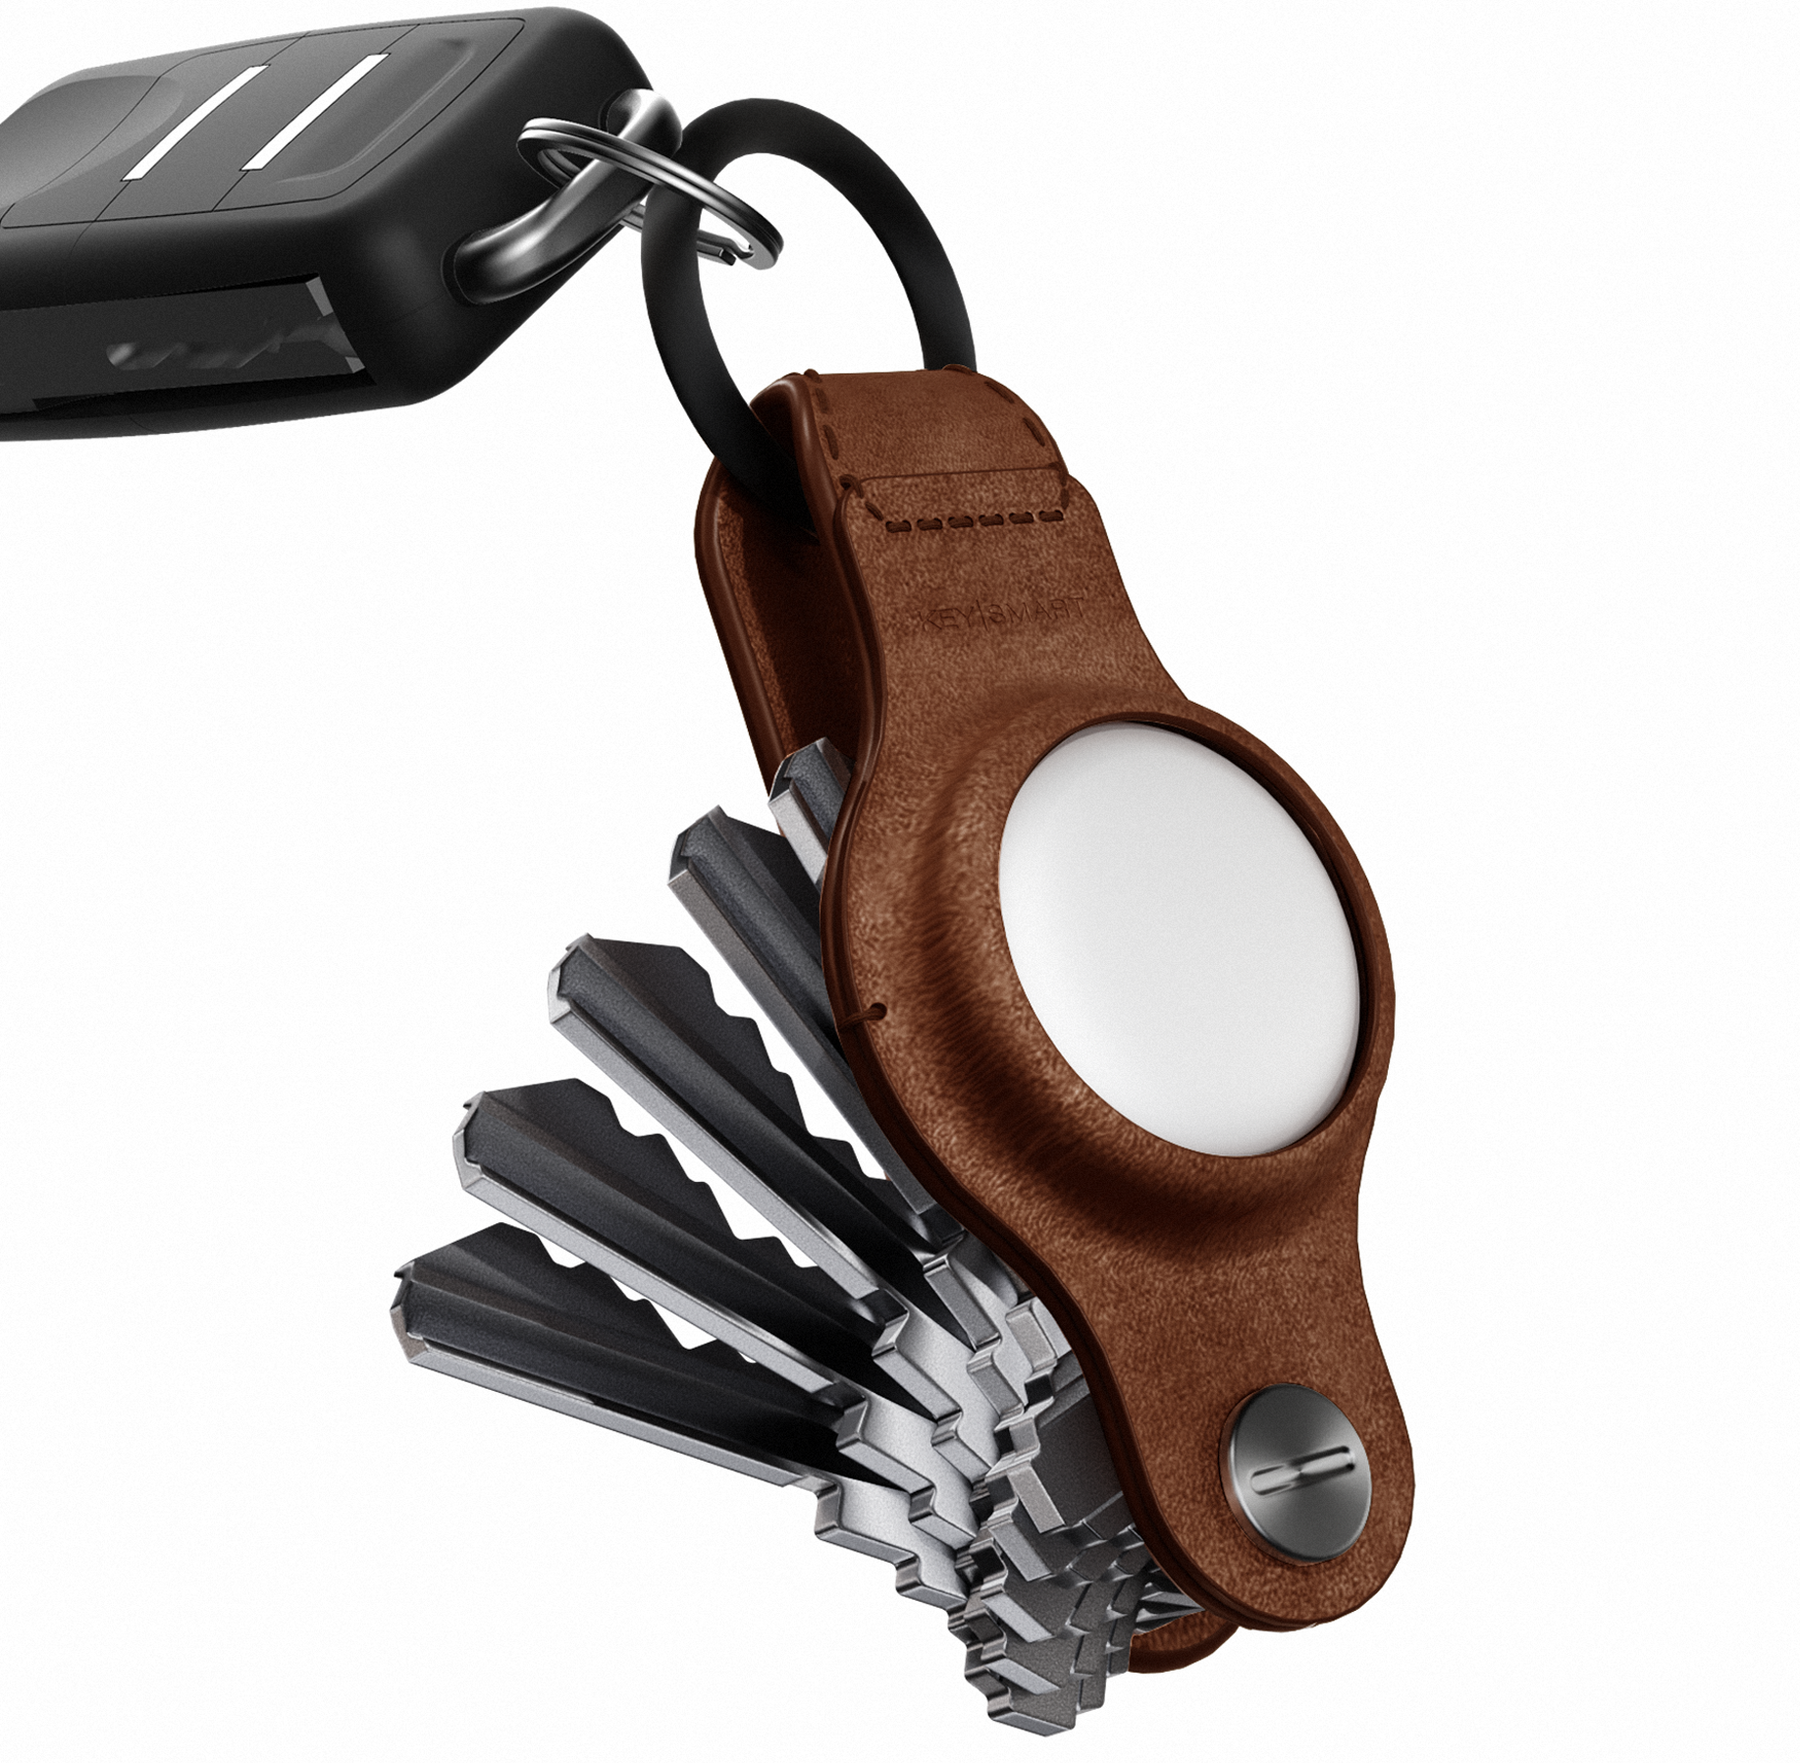 KeySmart® Air Leather Smart Key Organizer